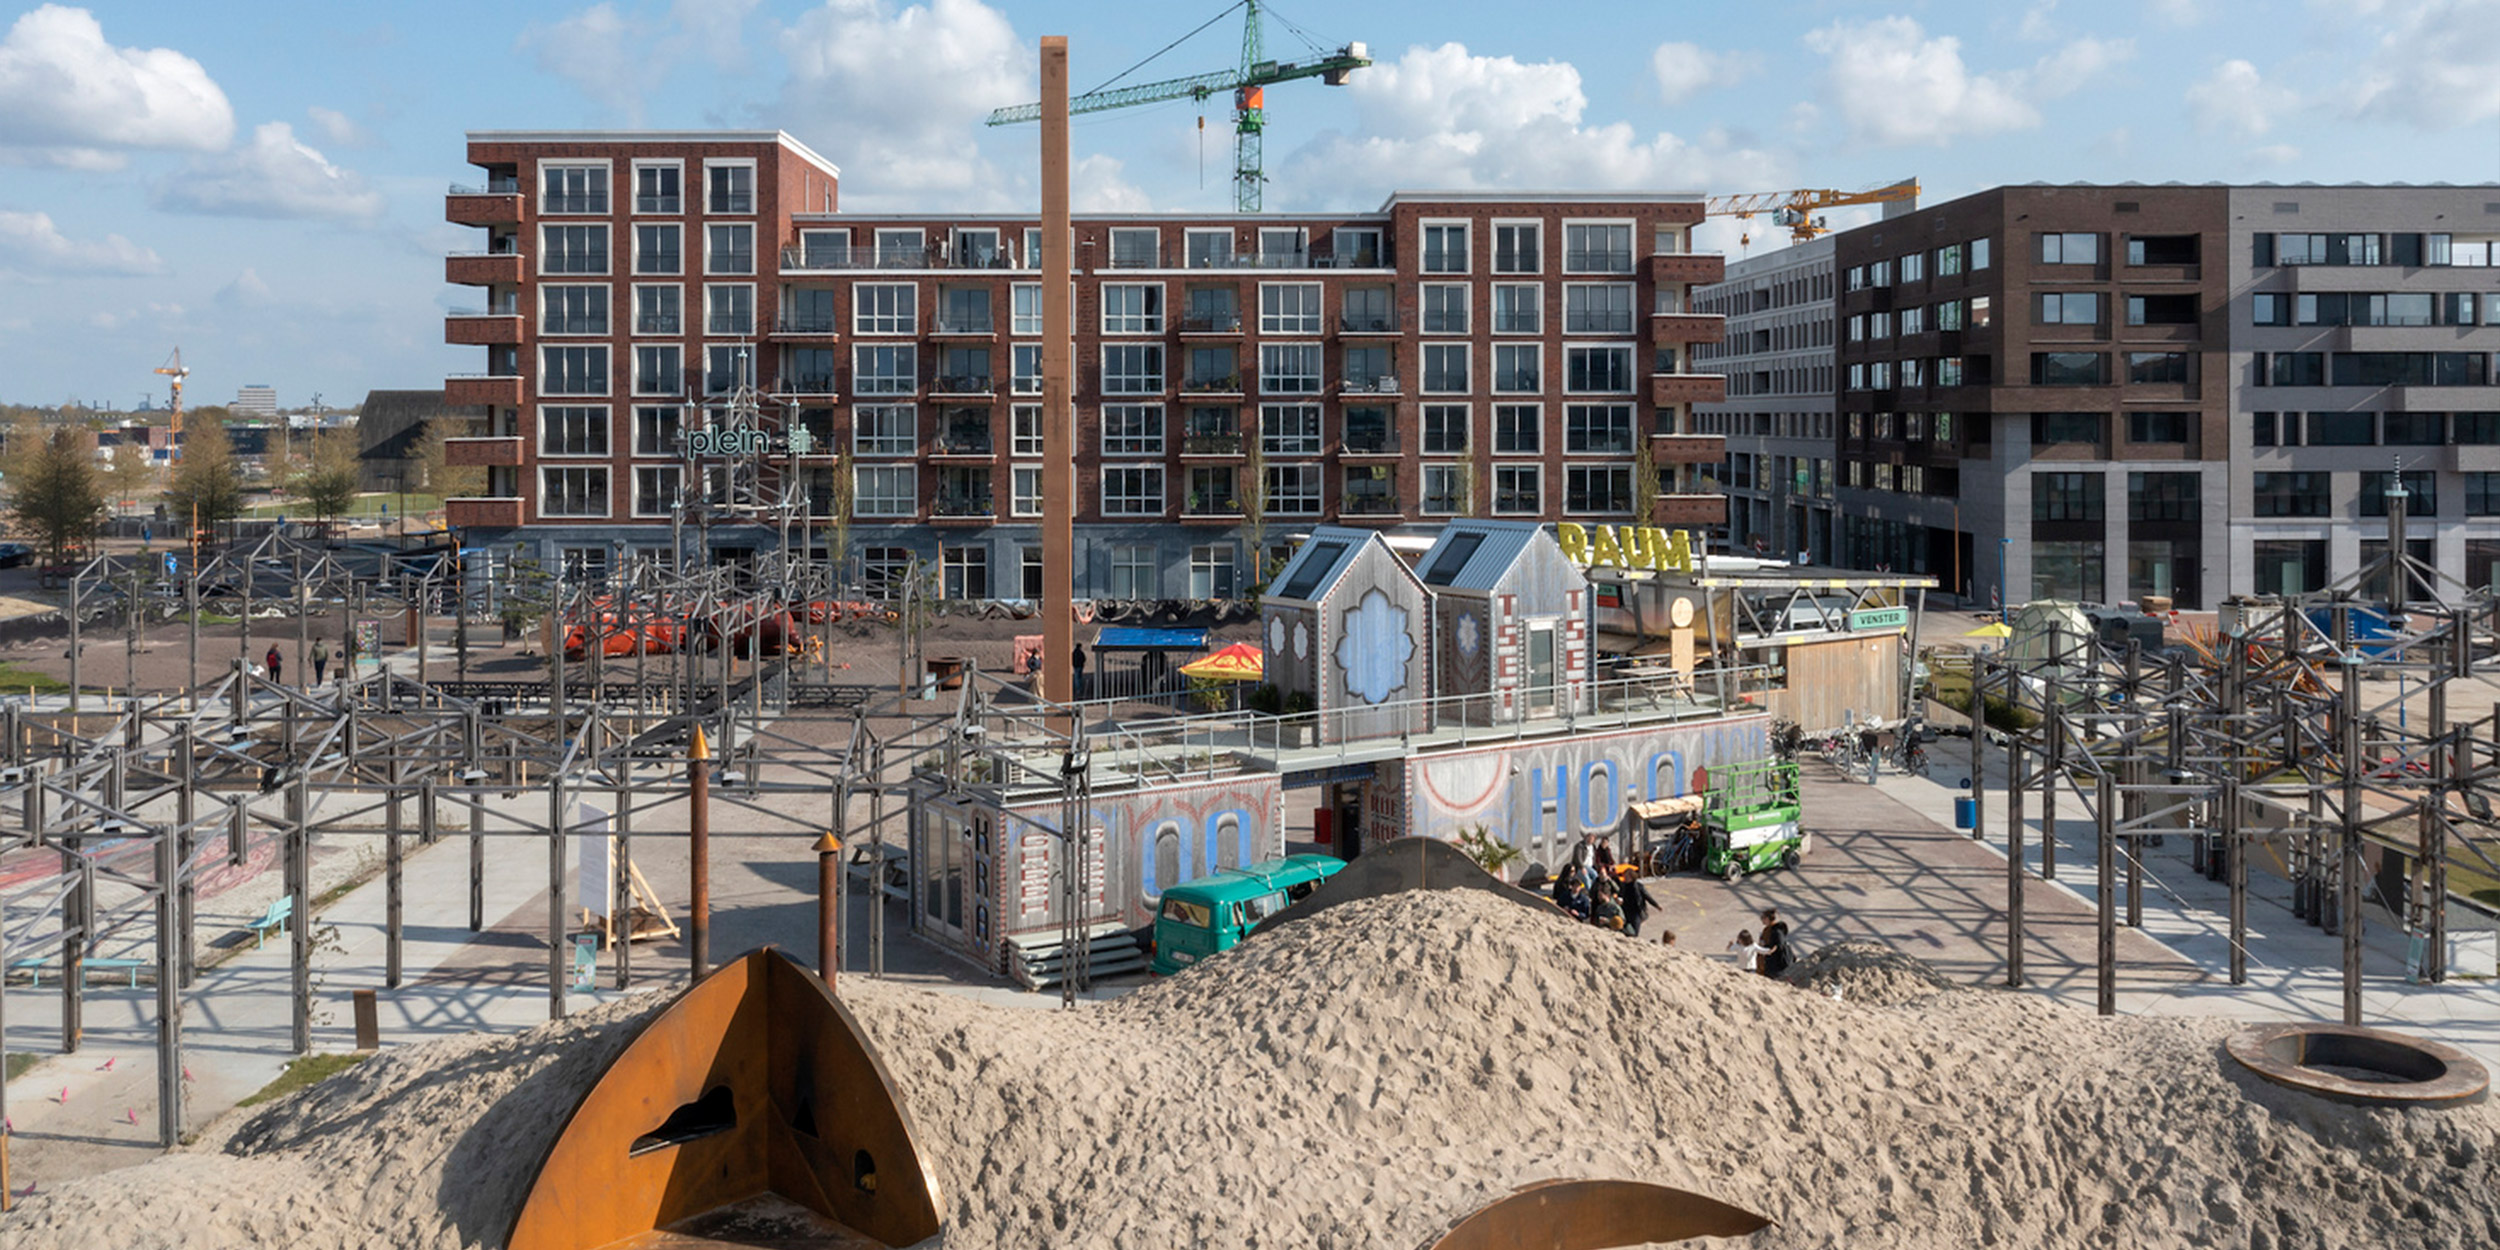 Een stukje van raum in Utrecht, met een grote zandheuvel, een aantal containerruimtes en verschillende kunstwerken op het plein. Afdeling-Buitengewone-Zaken---RAUM---2